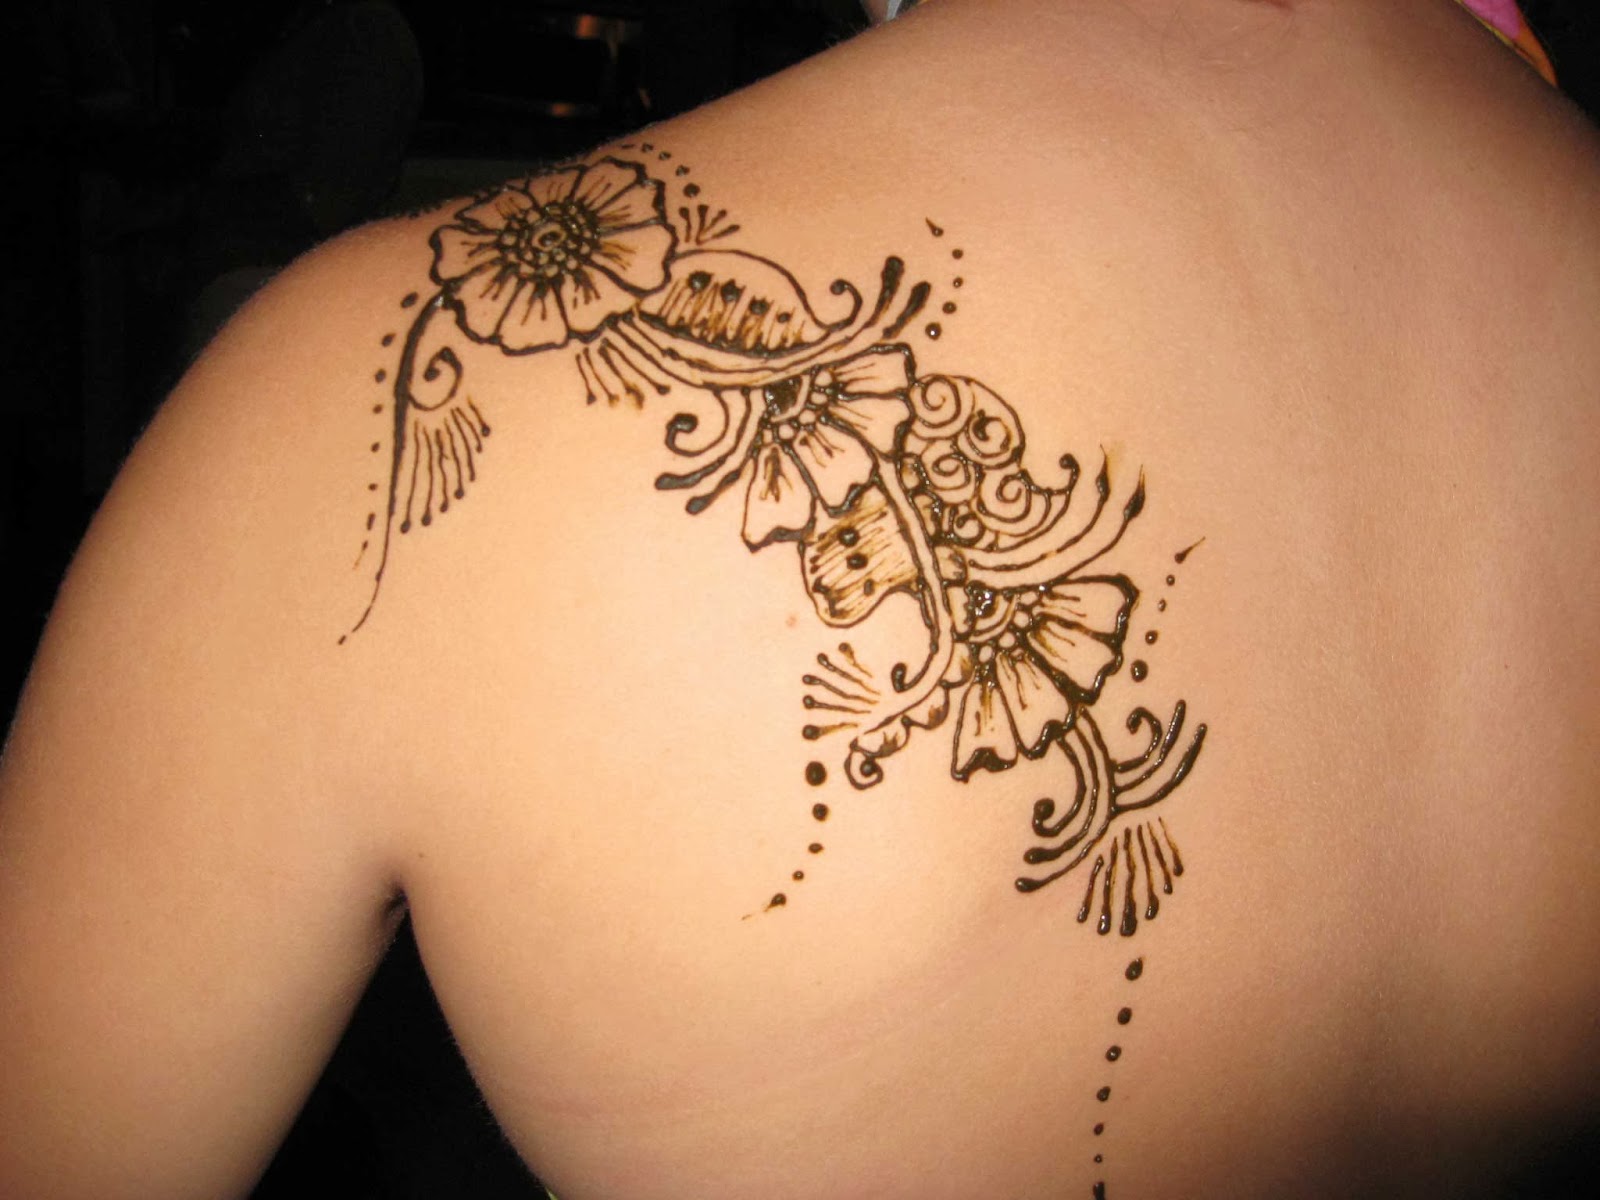 Tattooz Designs: Tattoos for Girls| Tattoo Designs of a Girl| Tattoo ...